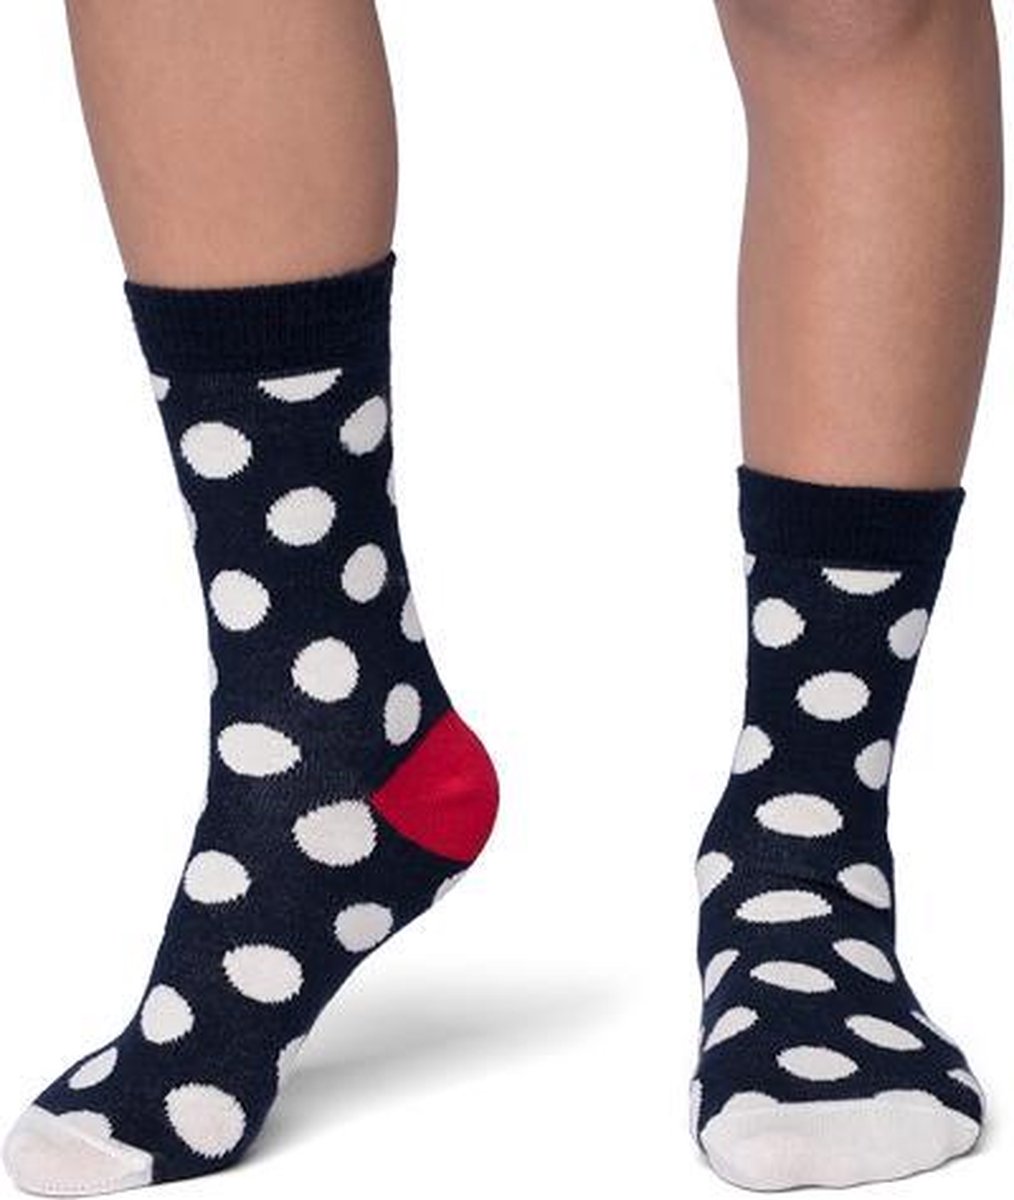 Kinder Fun sokken Katoen Multicolor Grote Stippen 35-38 per 2 paar